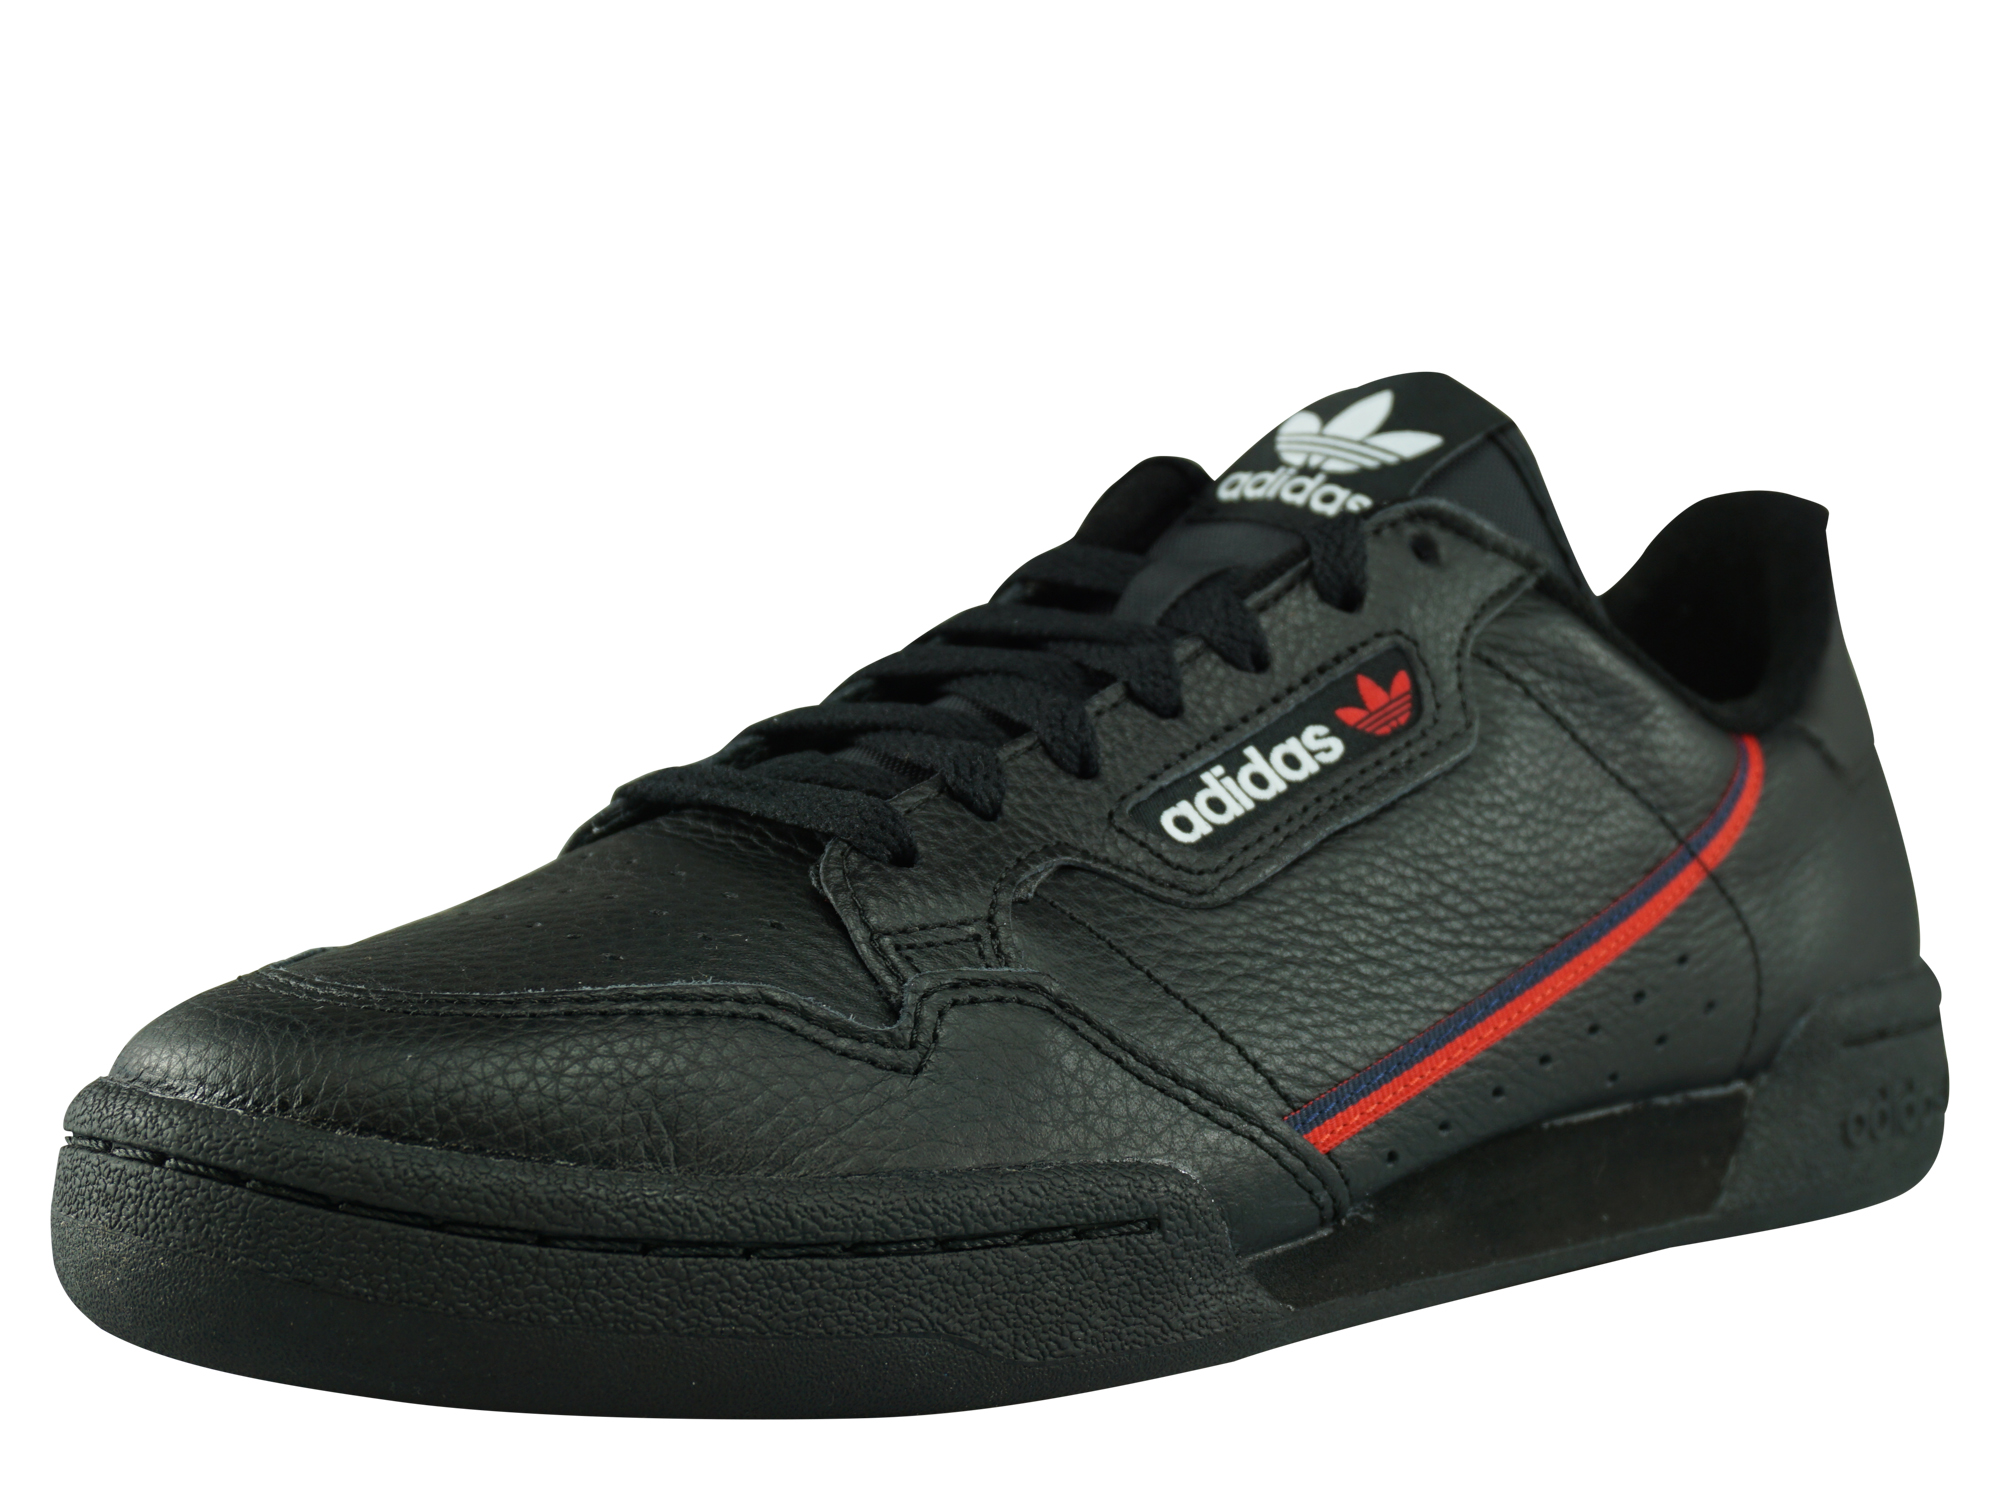 Adidas Originals Continental 80 Herren Sneaker